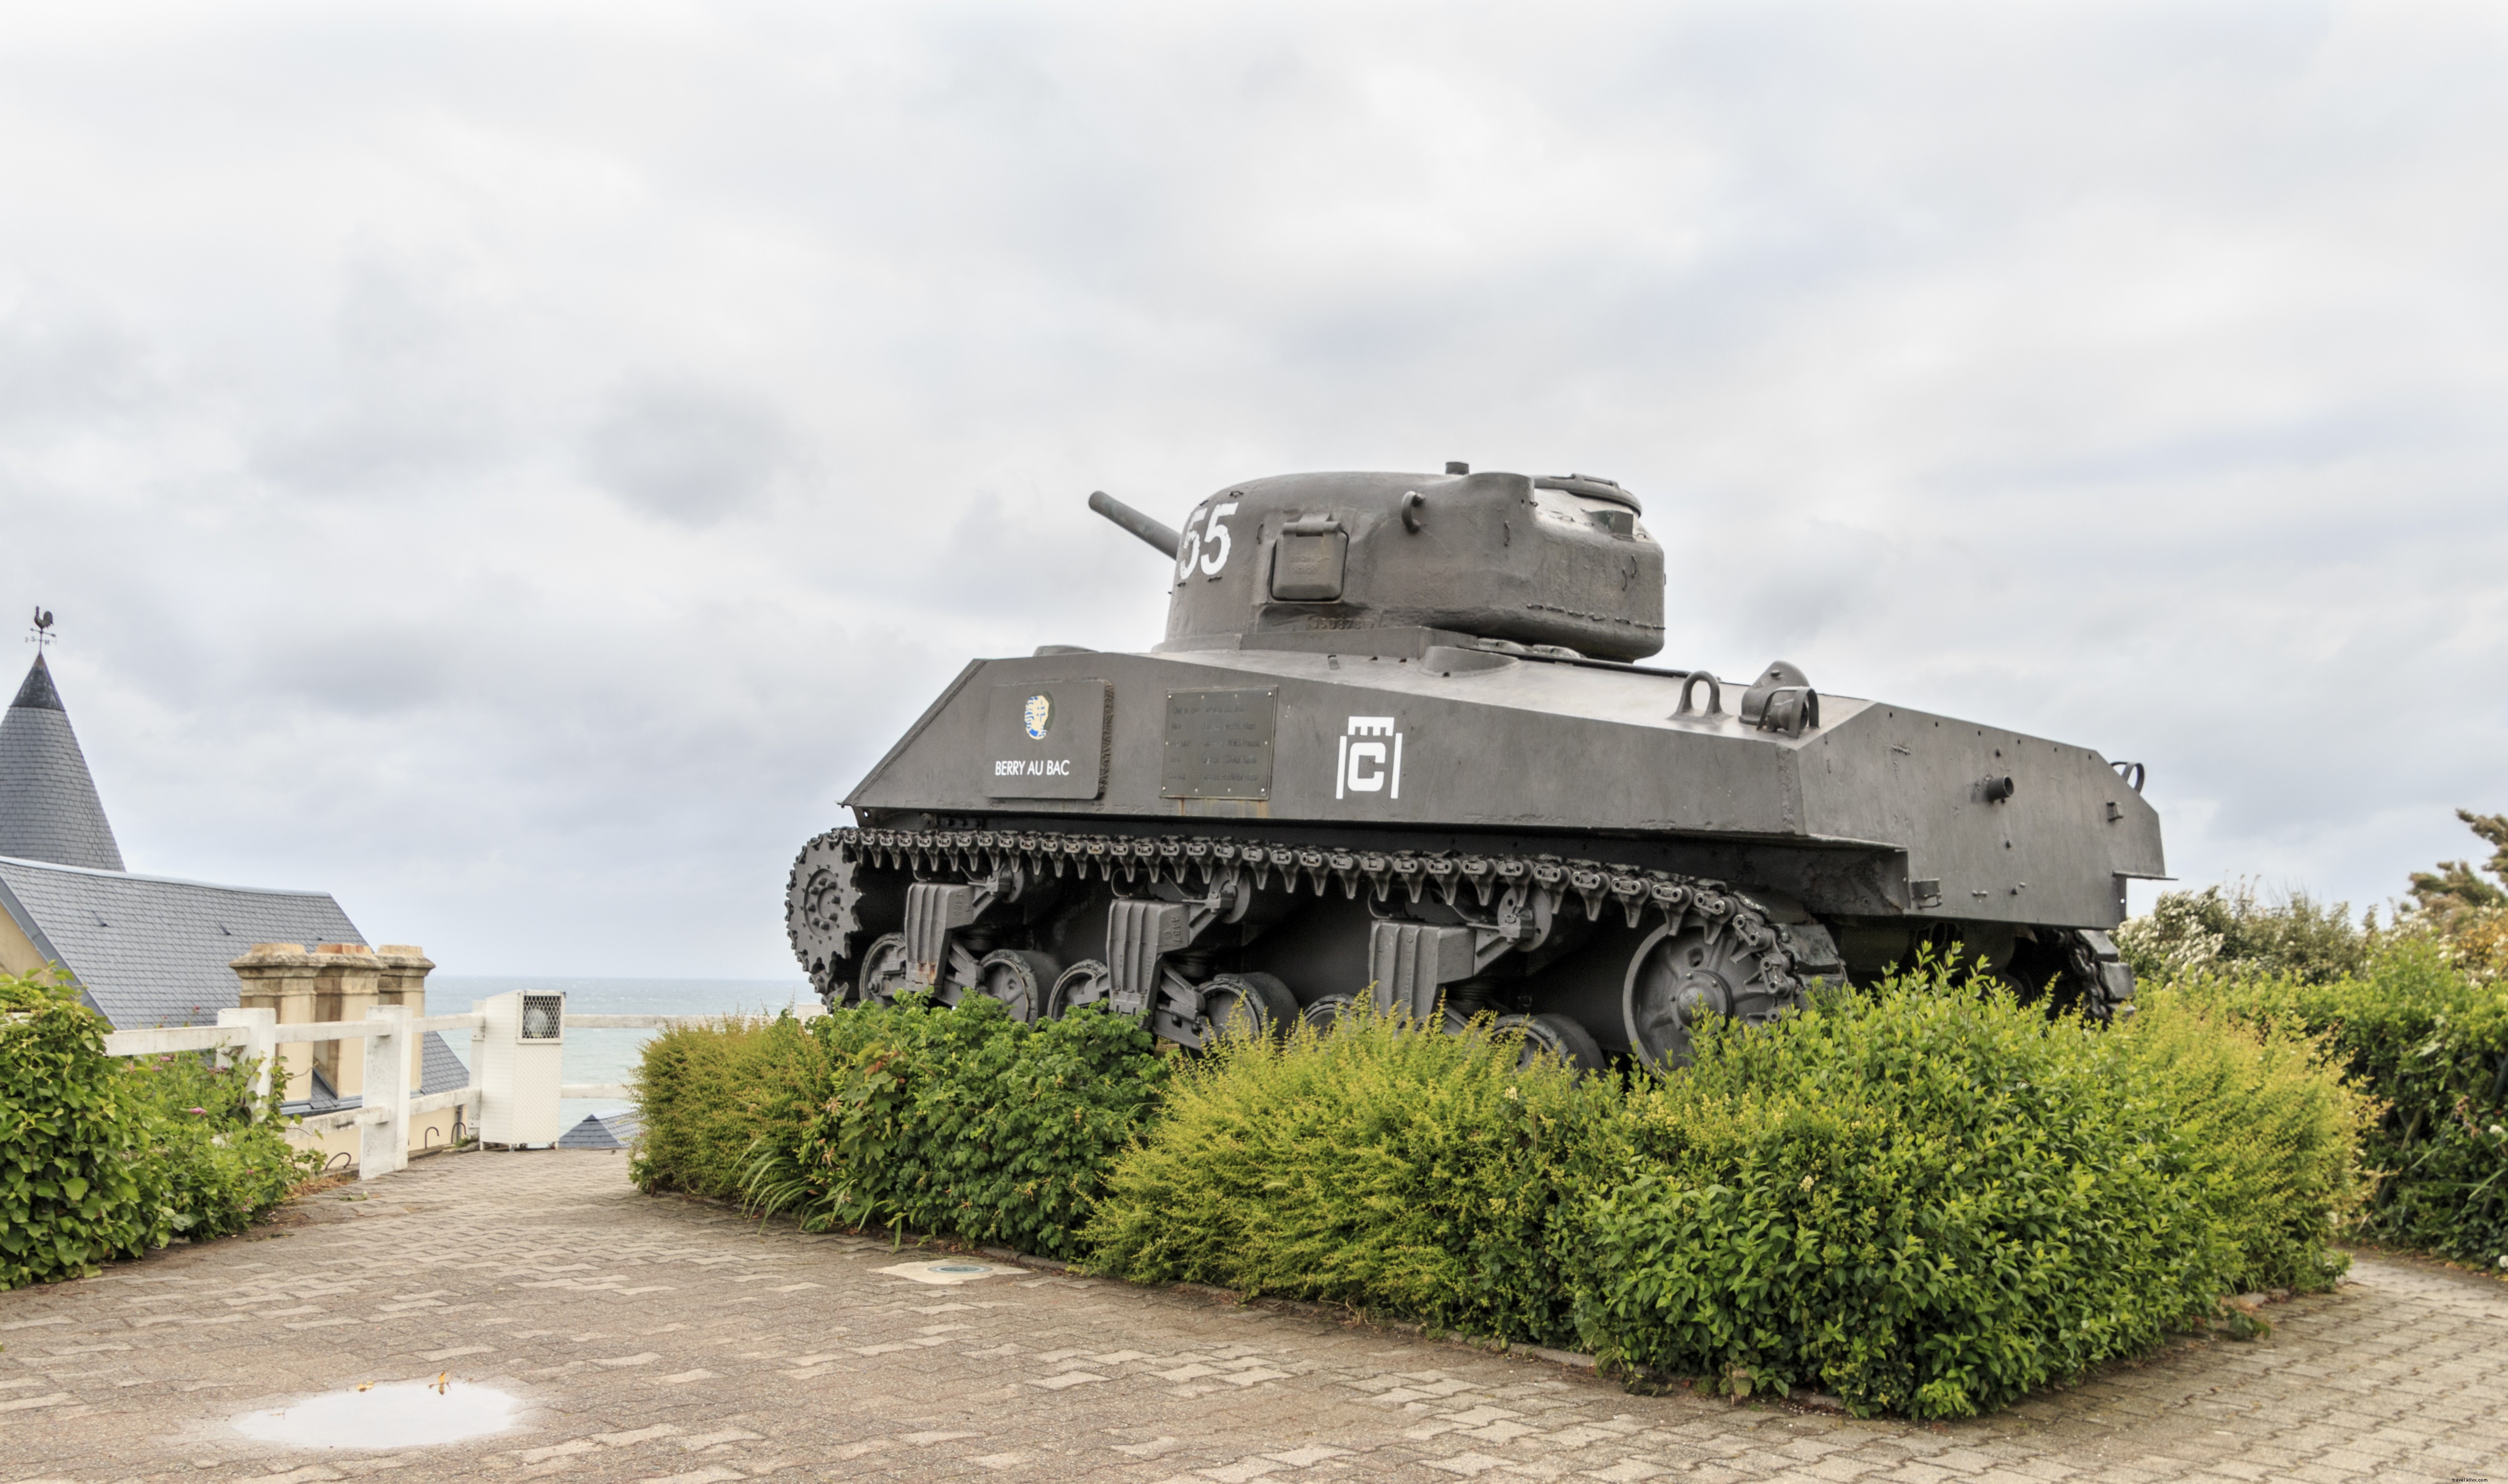 Le spiagge del D-Day in Normandia:combinazione di storia e bellezza naturale nella Francia occidentale